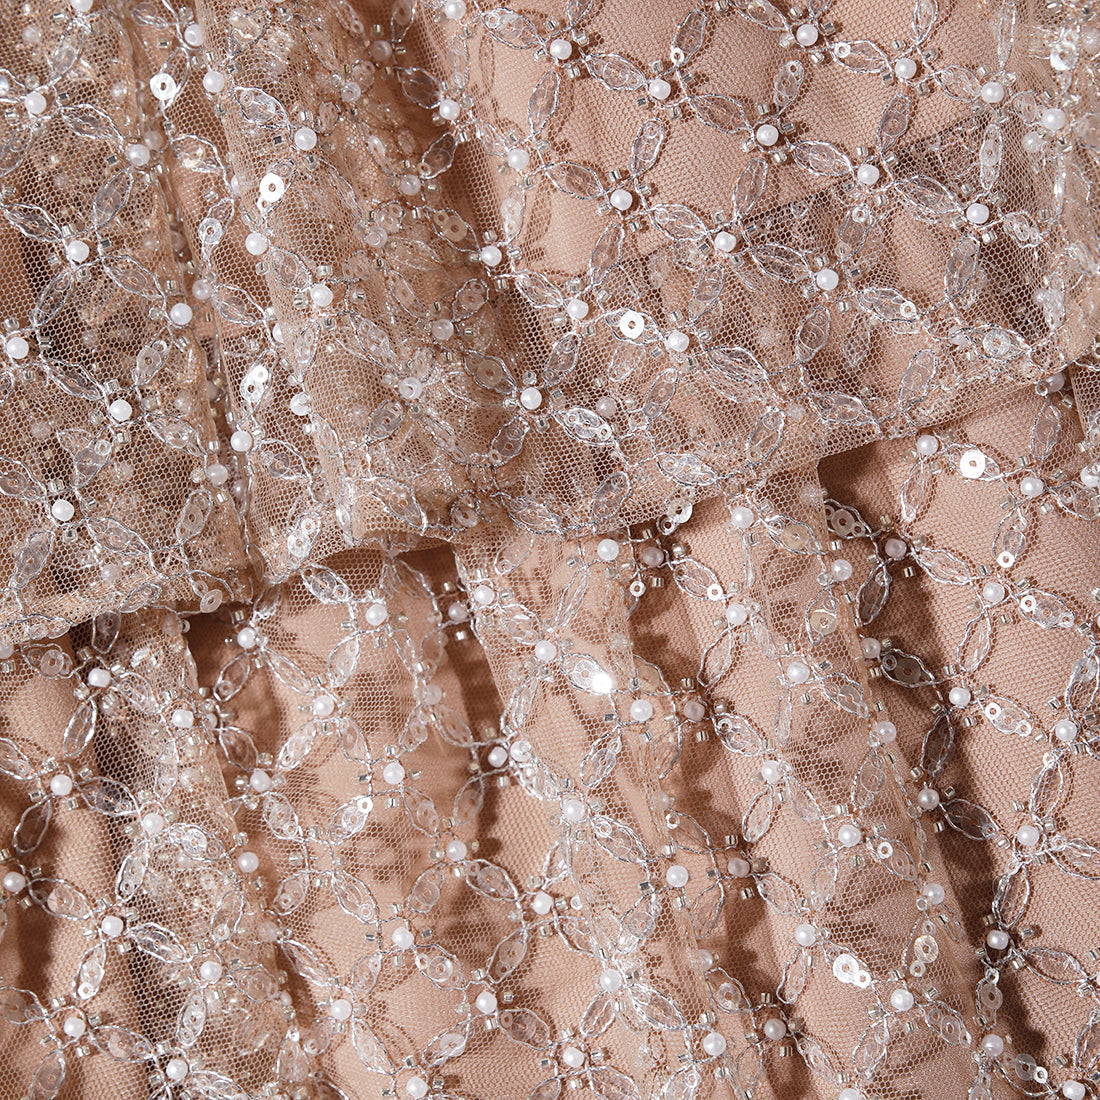 Tan Grid Sequin Tiered Mini Dress